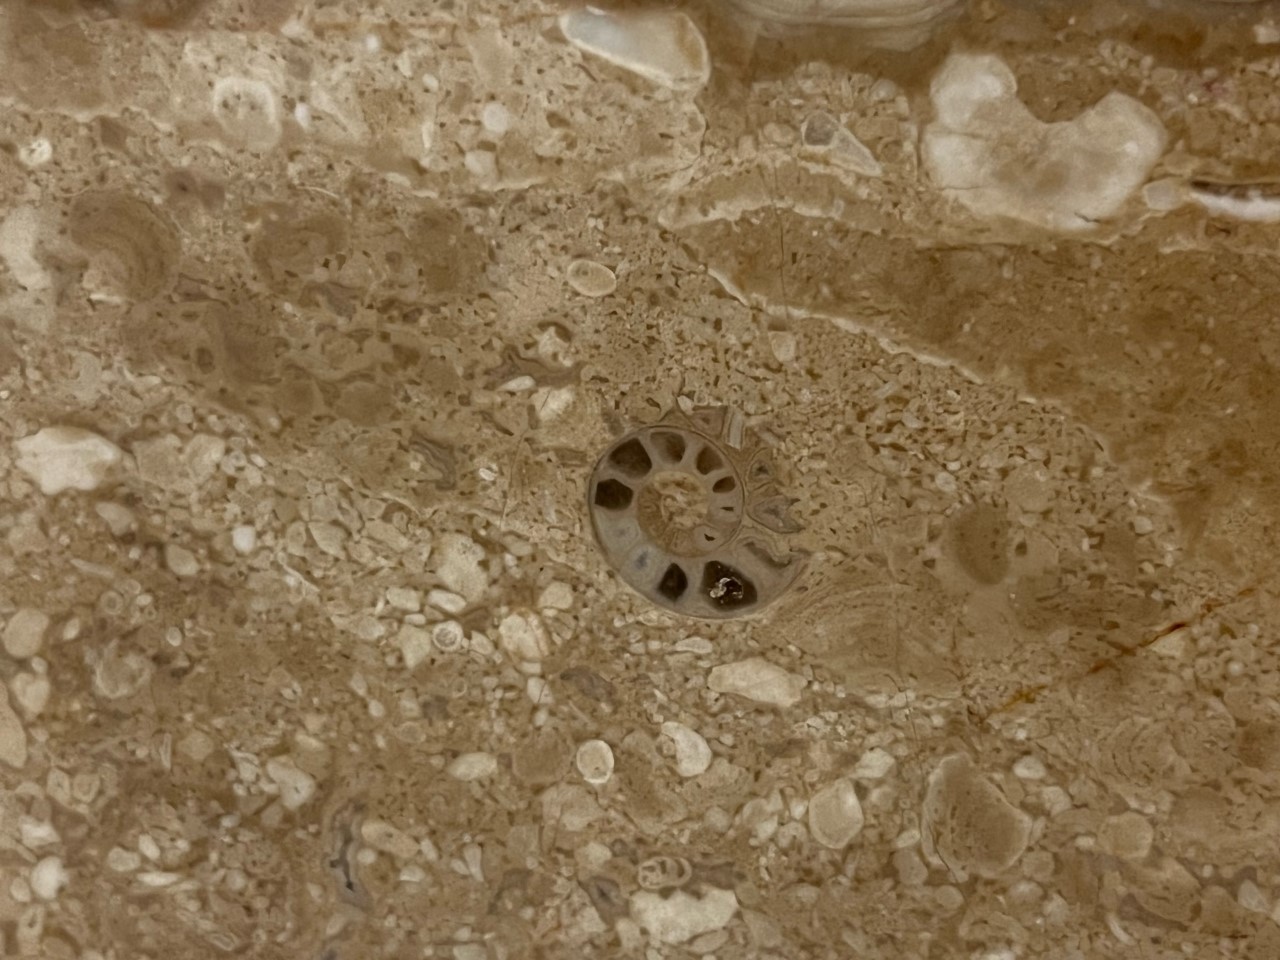 這是在港鐵沙田站發現的菊石化石的切面，菊石於6,500萬年前的白堊紀晚期滅絕，故這件菊石可協助推斷這種岩石的大概地質年代。